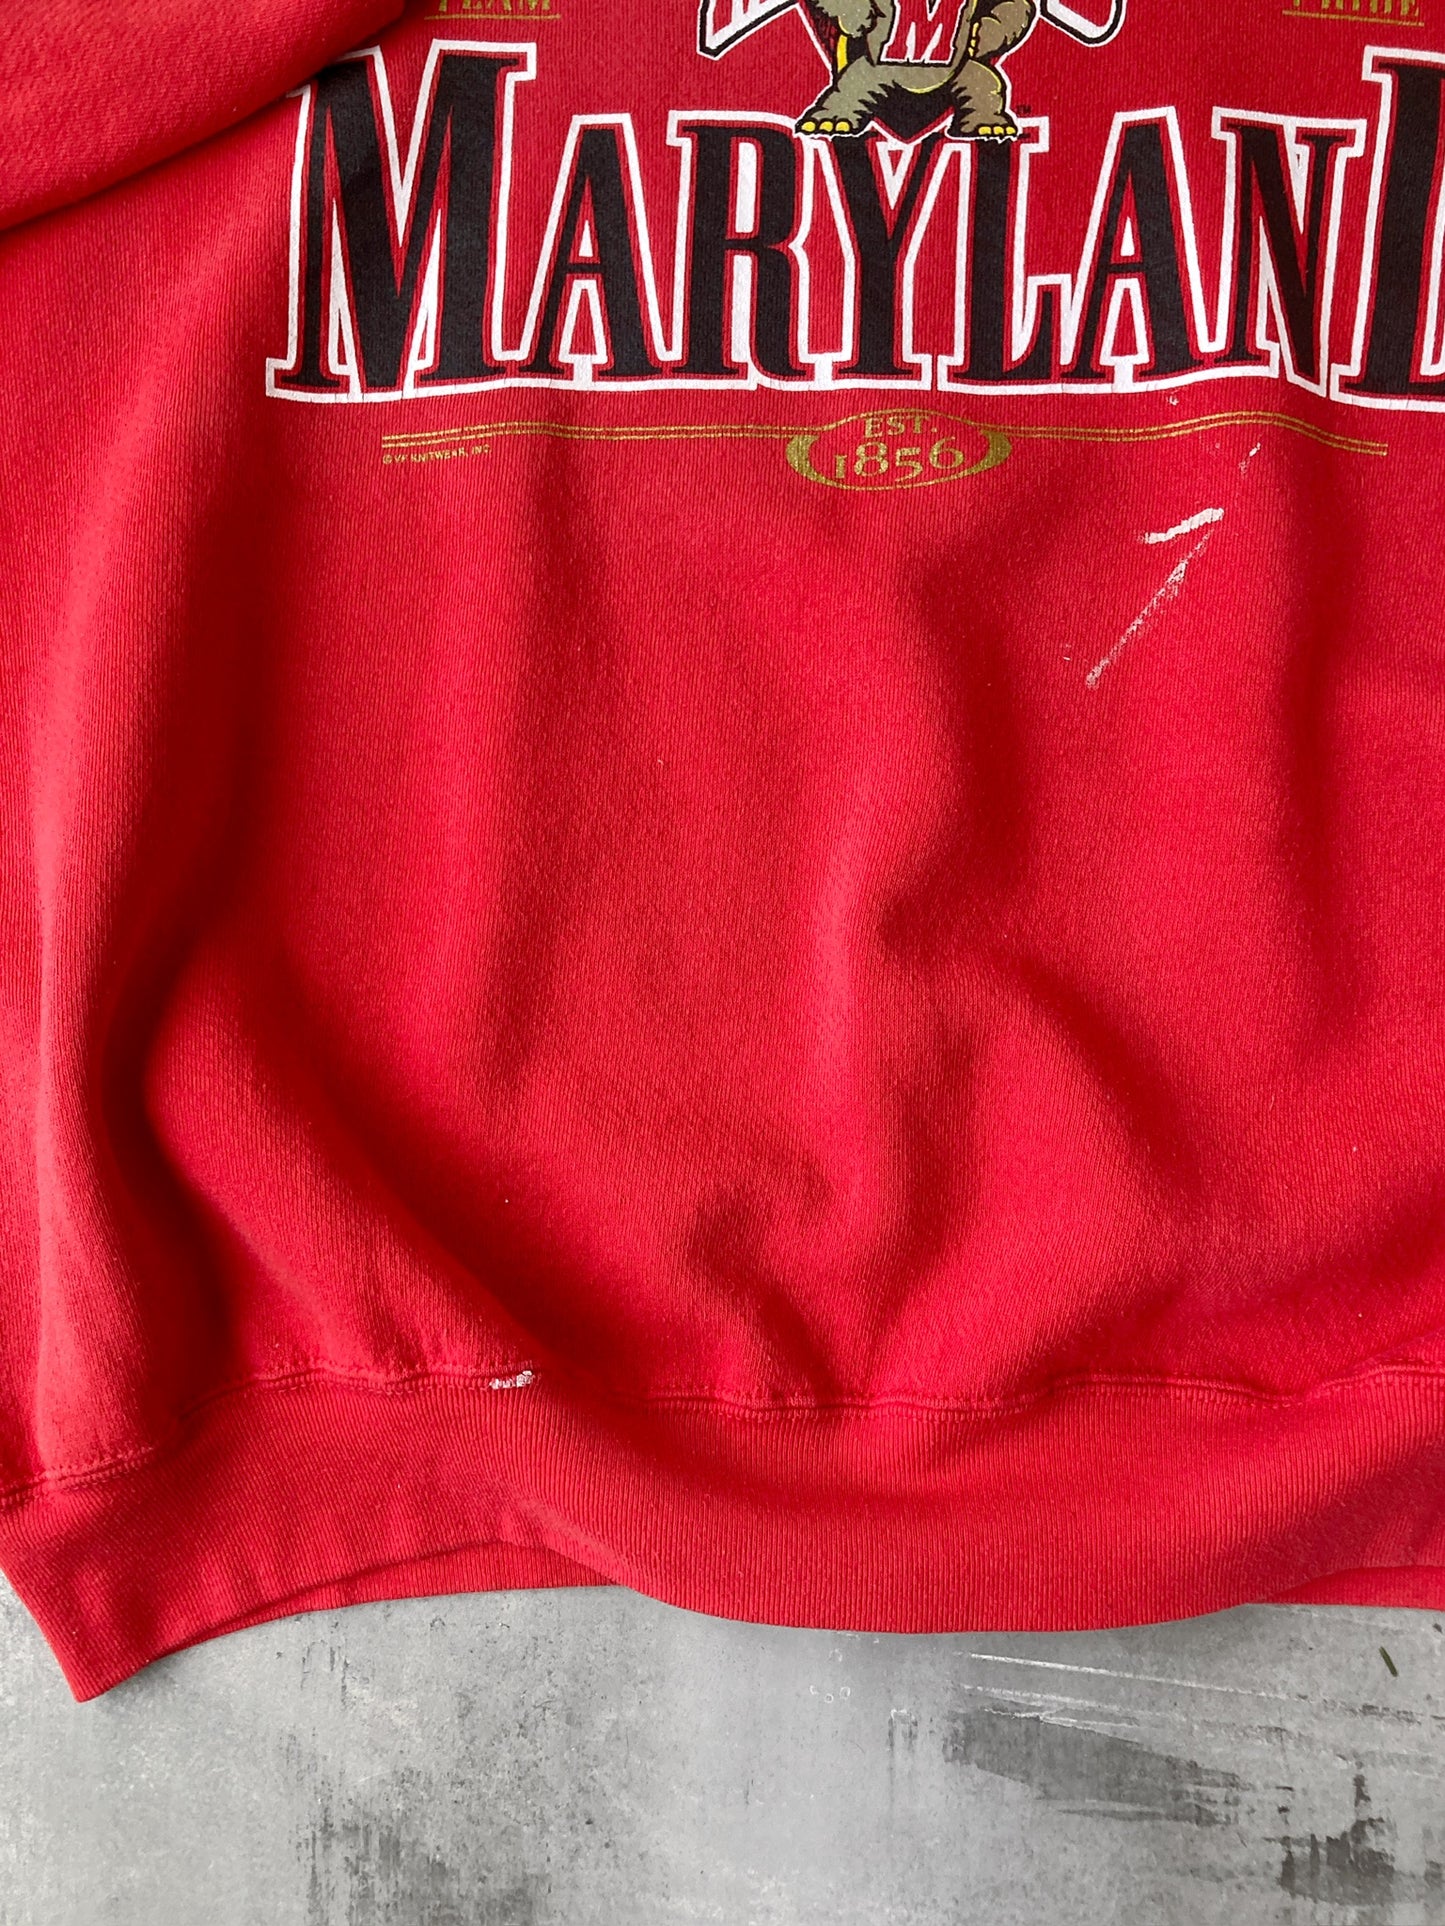 University of Maryland Sweatshirt 90's - XL